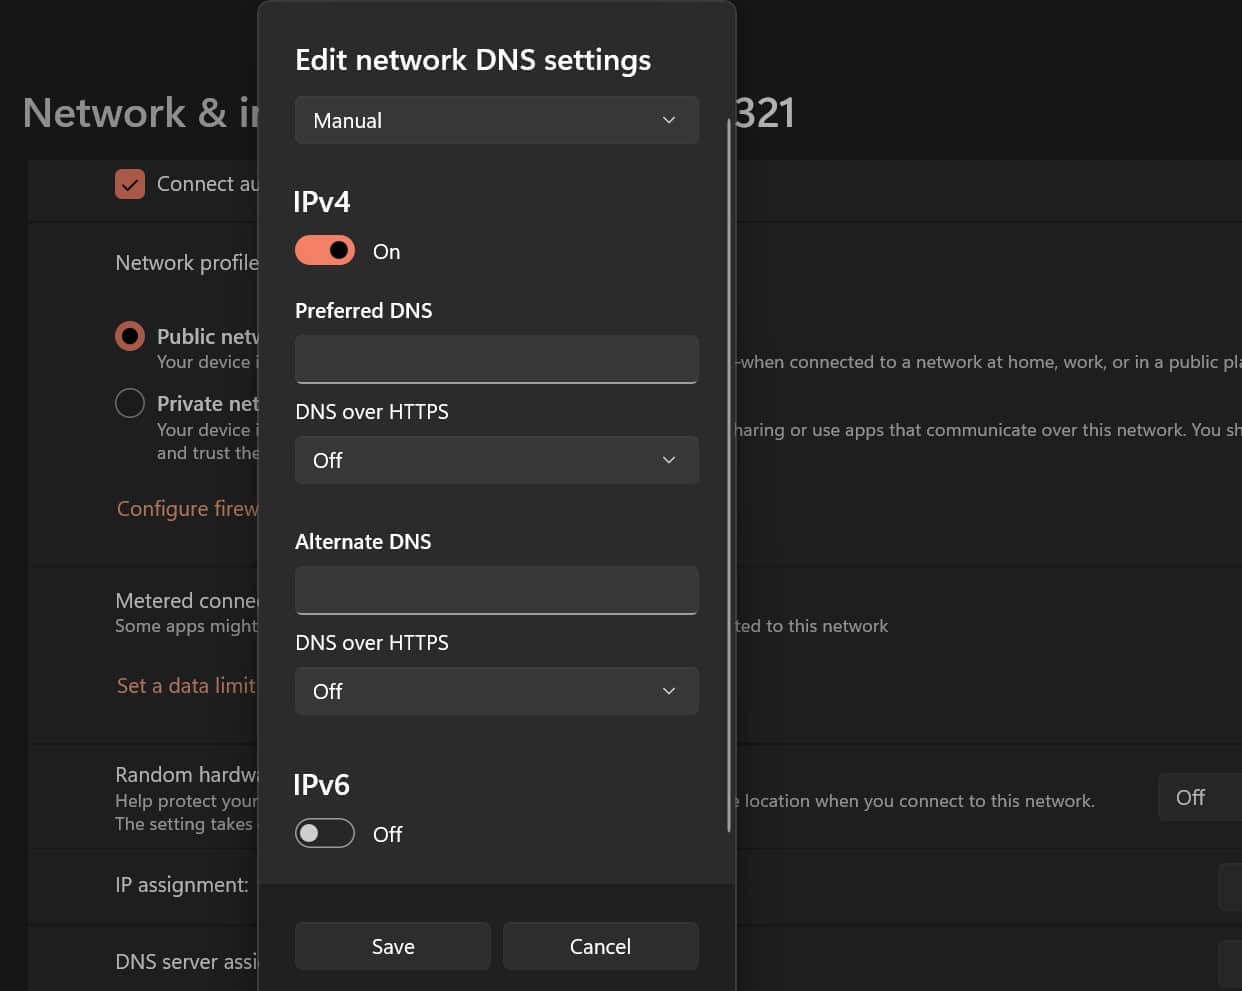 Aktivering av manuella DNS-inställningar i Windows.[/image]